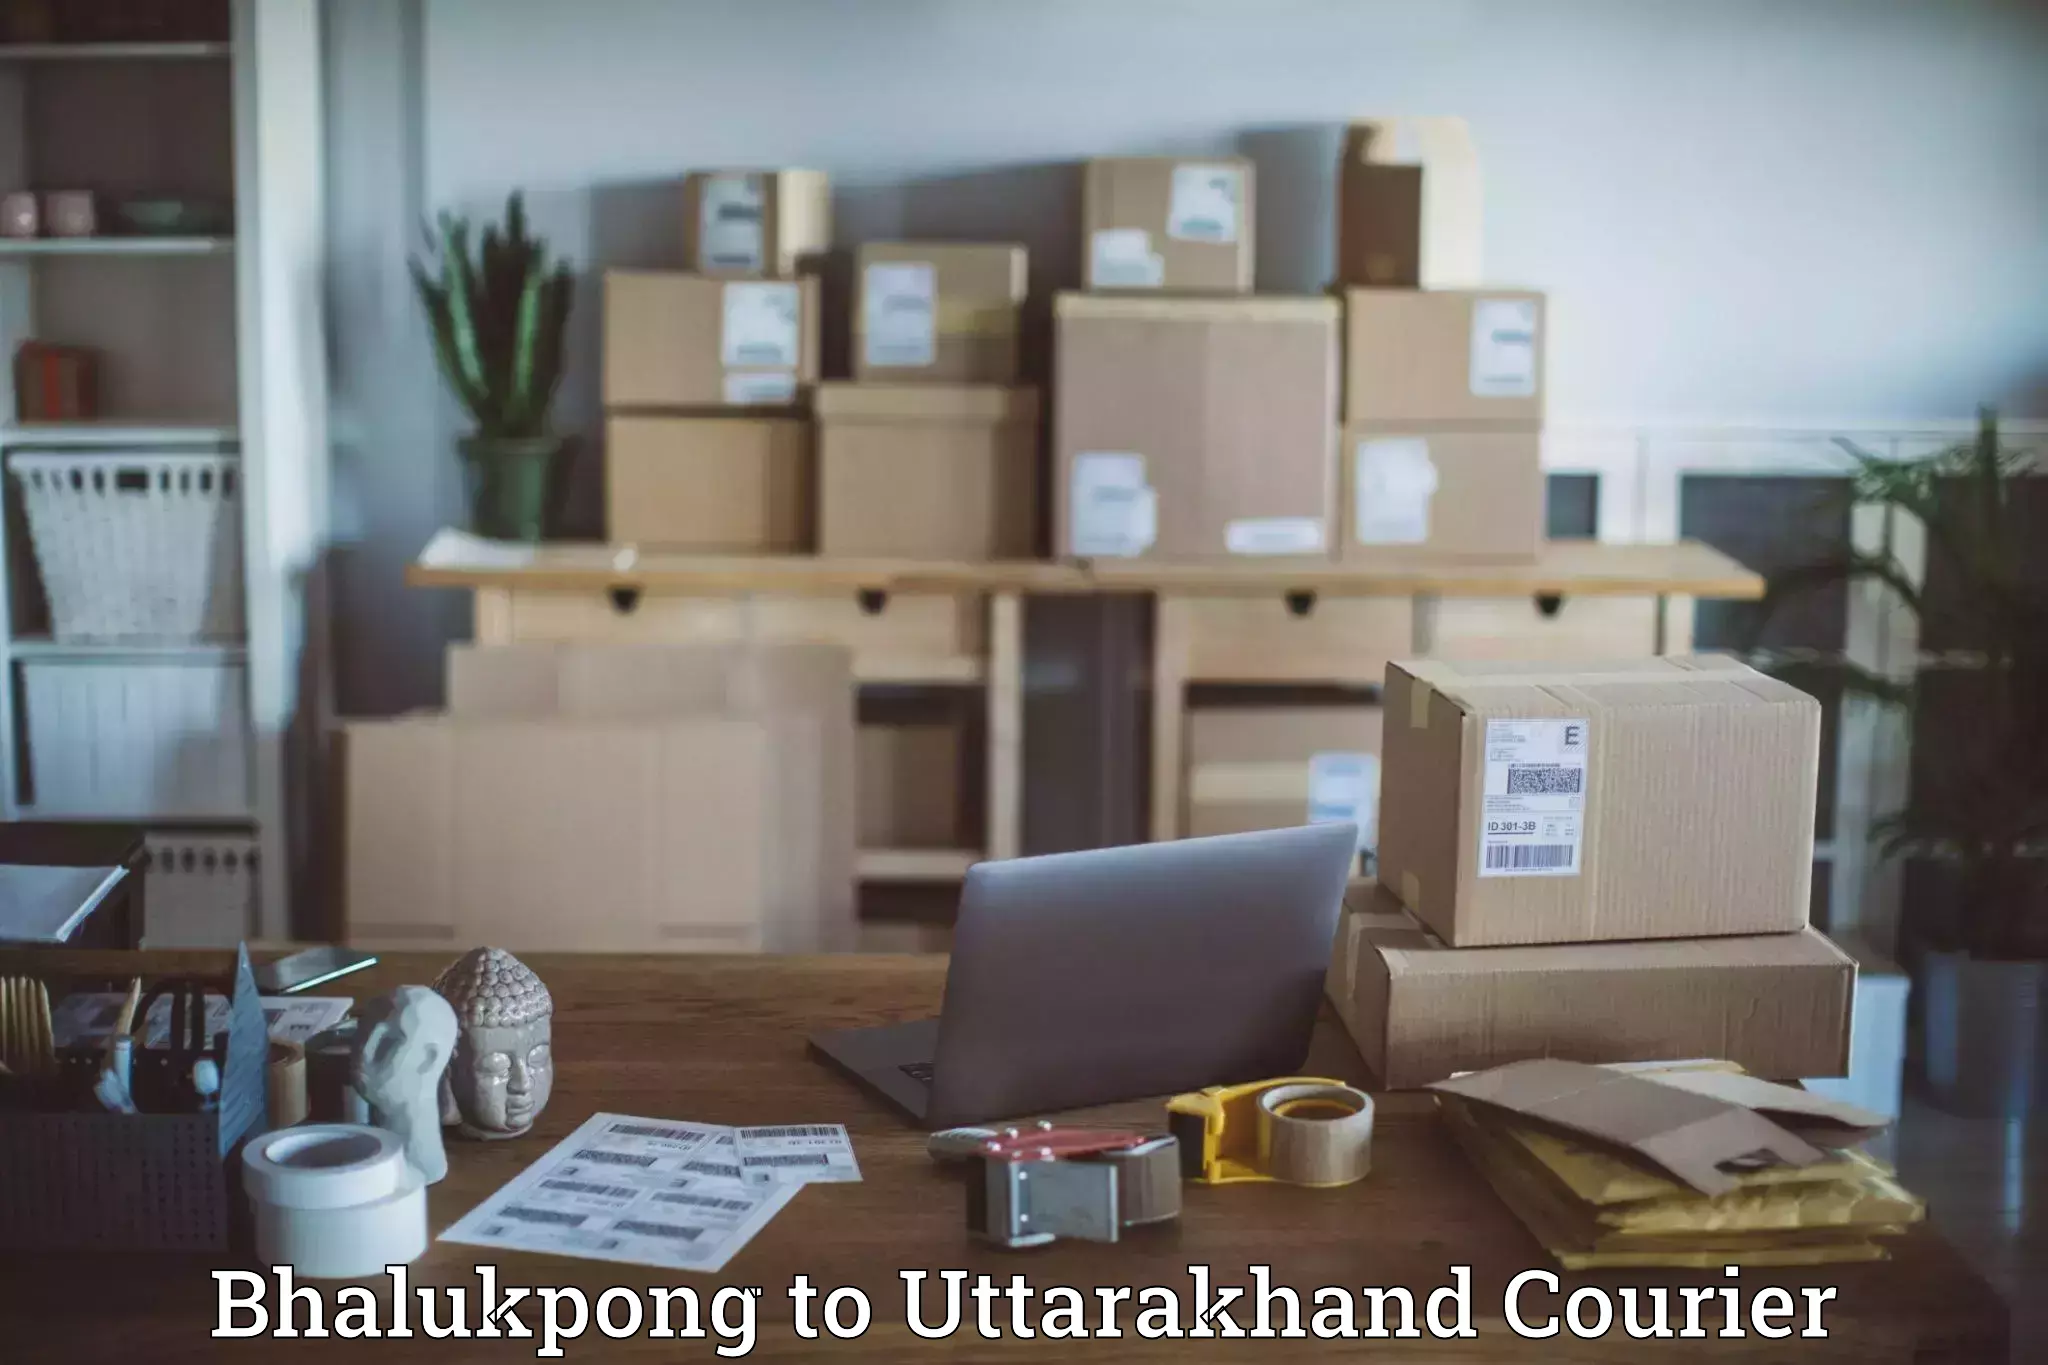 International courier networks Bhalukpong to Uttarakhand